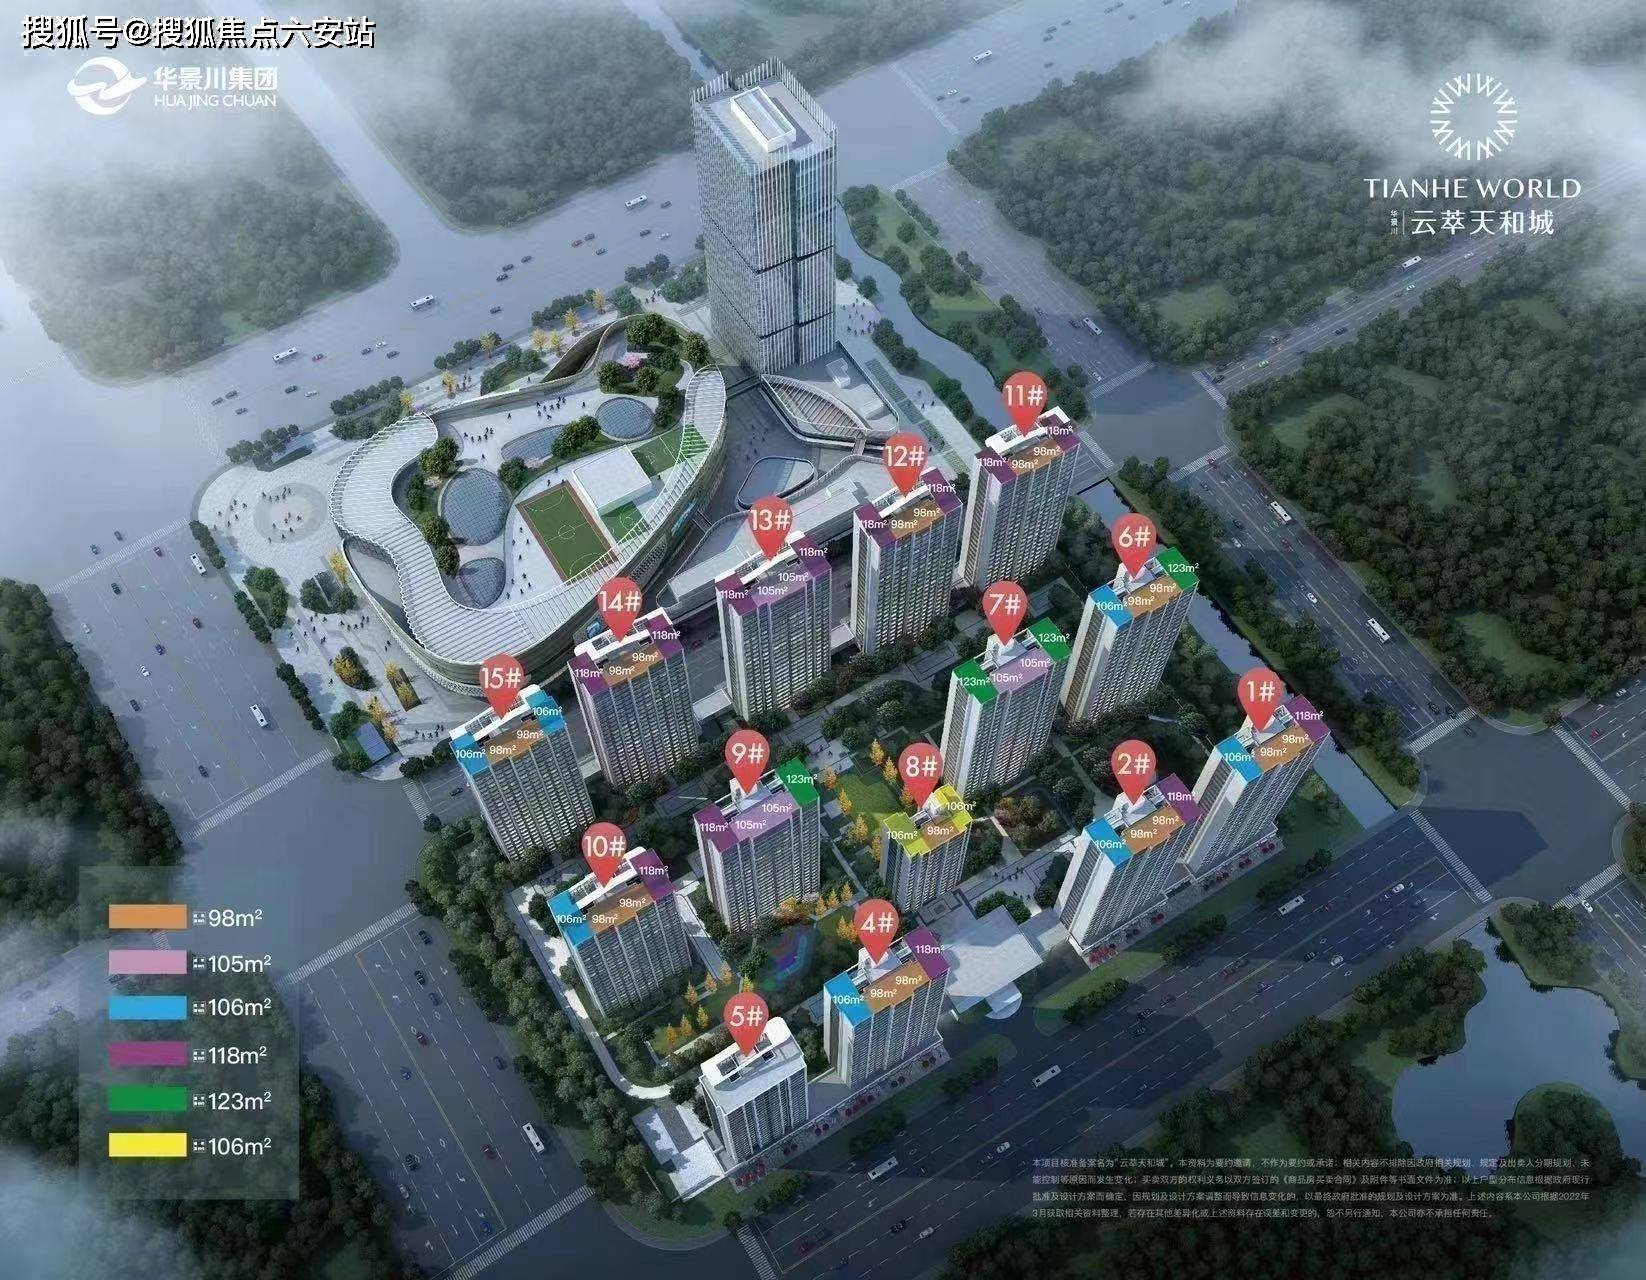 【建筑面积】建筑面积约39万㎡【项目位置】杭州市富阳区富春湾大道